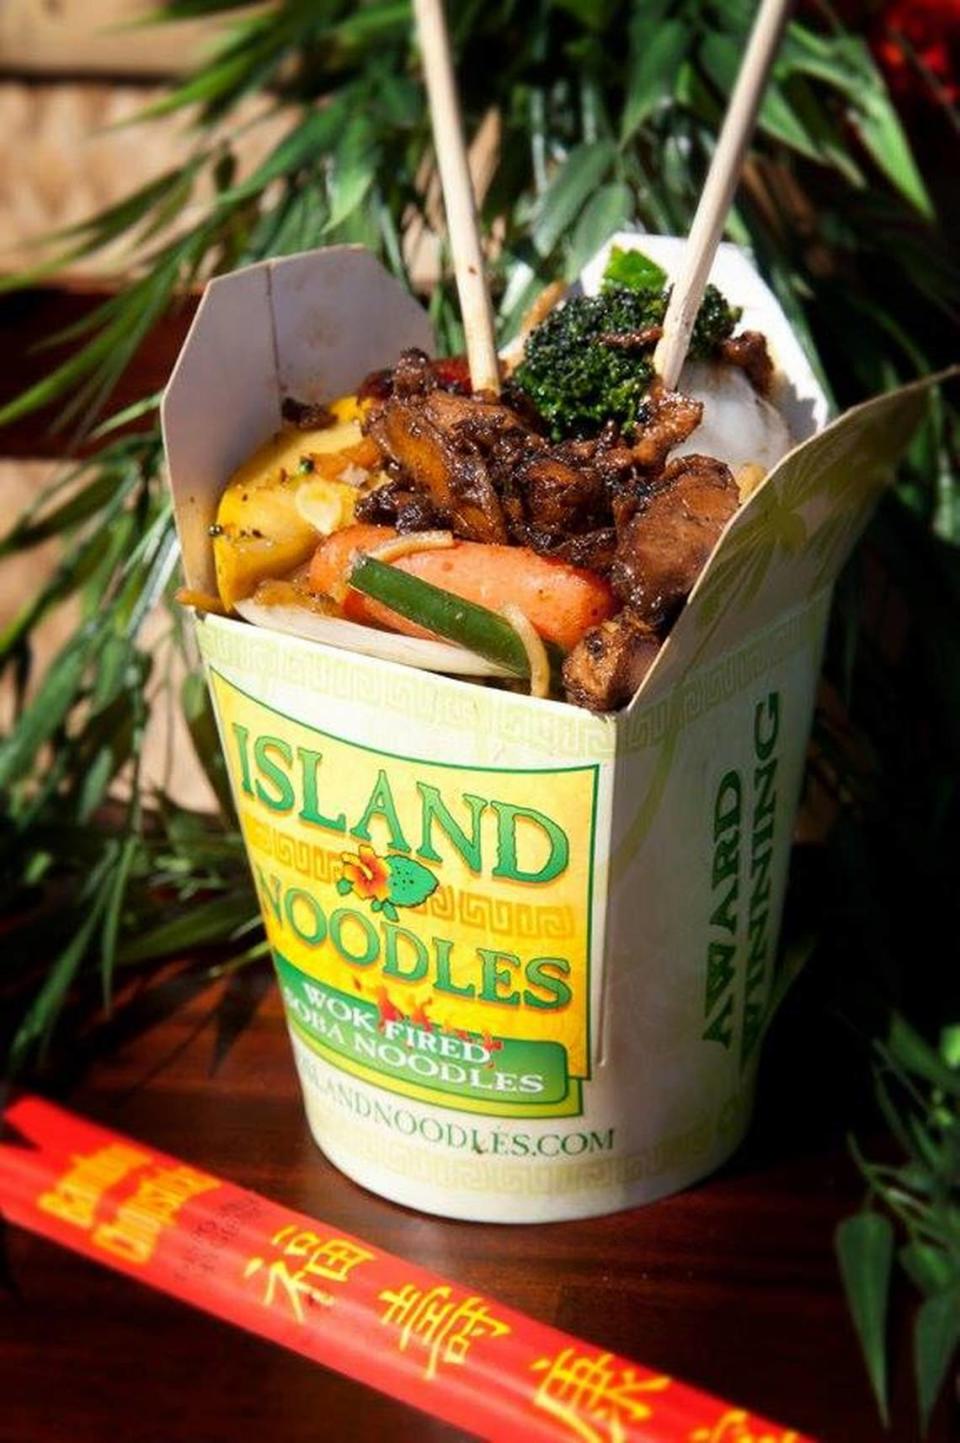 Island Noodles serves healthy wok-fired noodles and fresh vegetables. Island Noodles Facebook